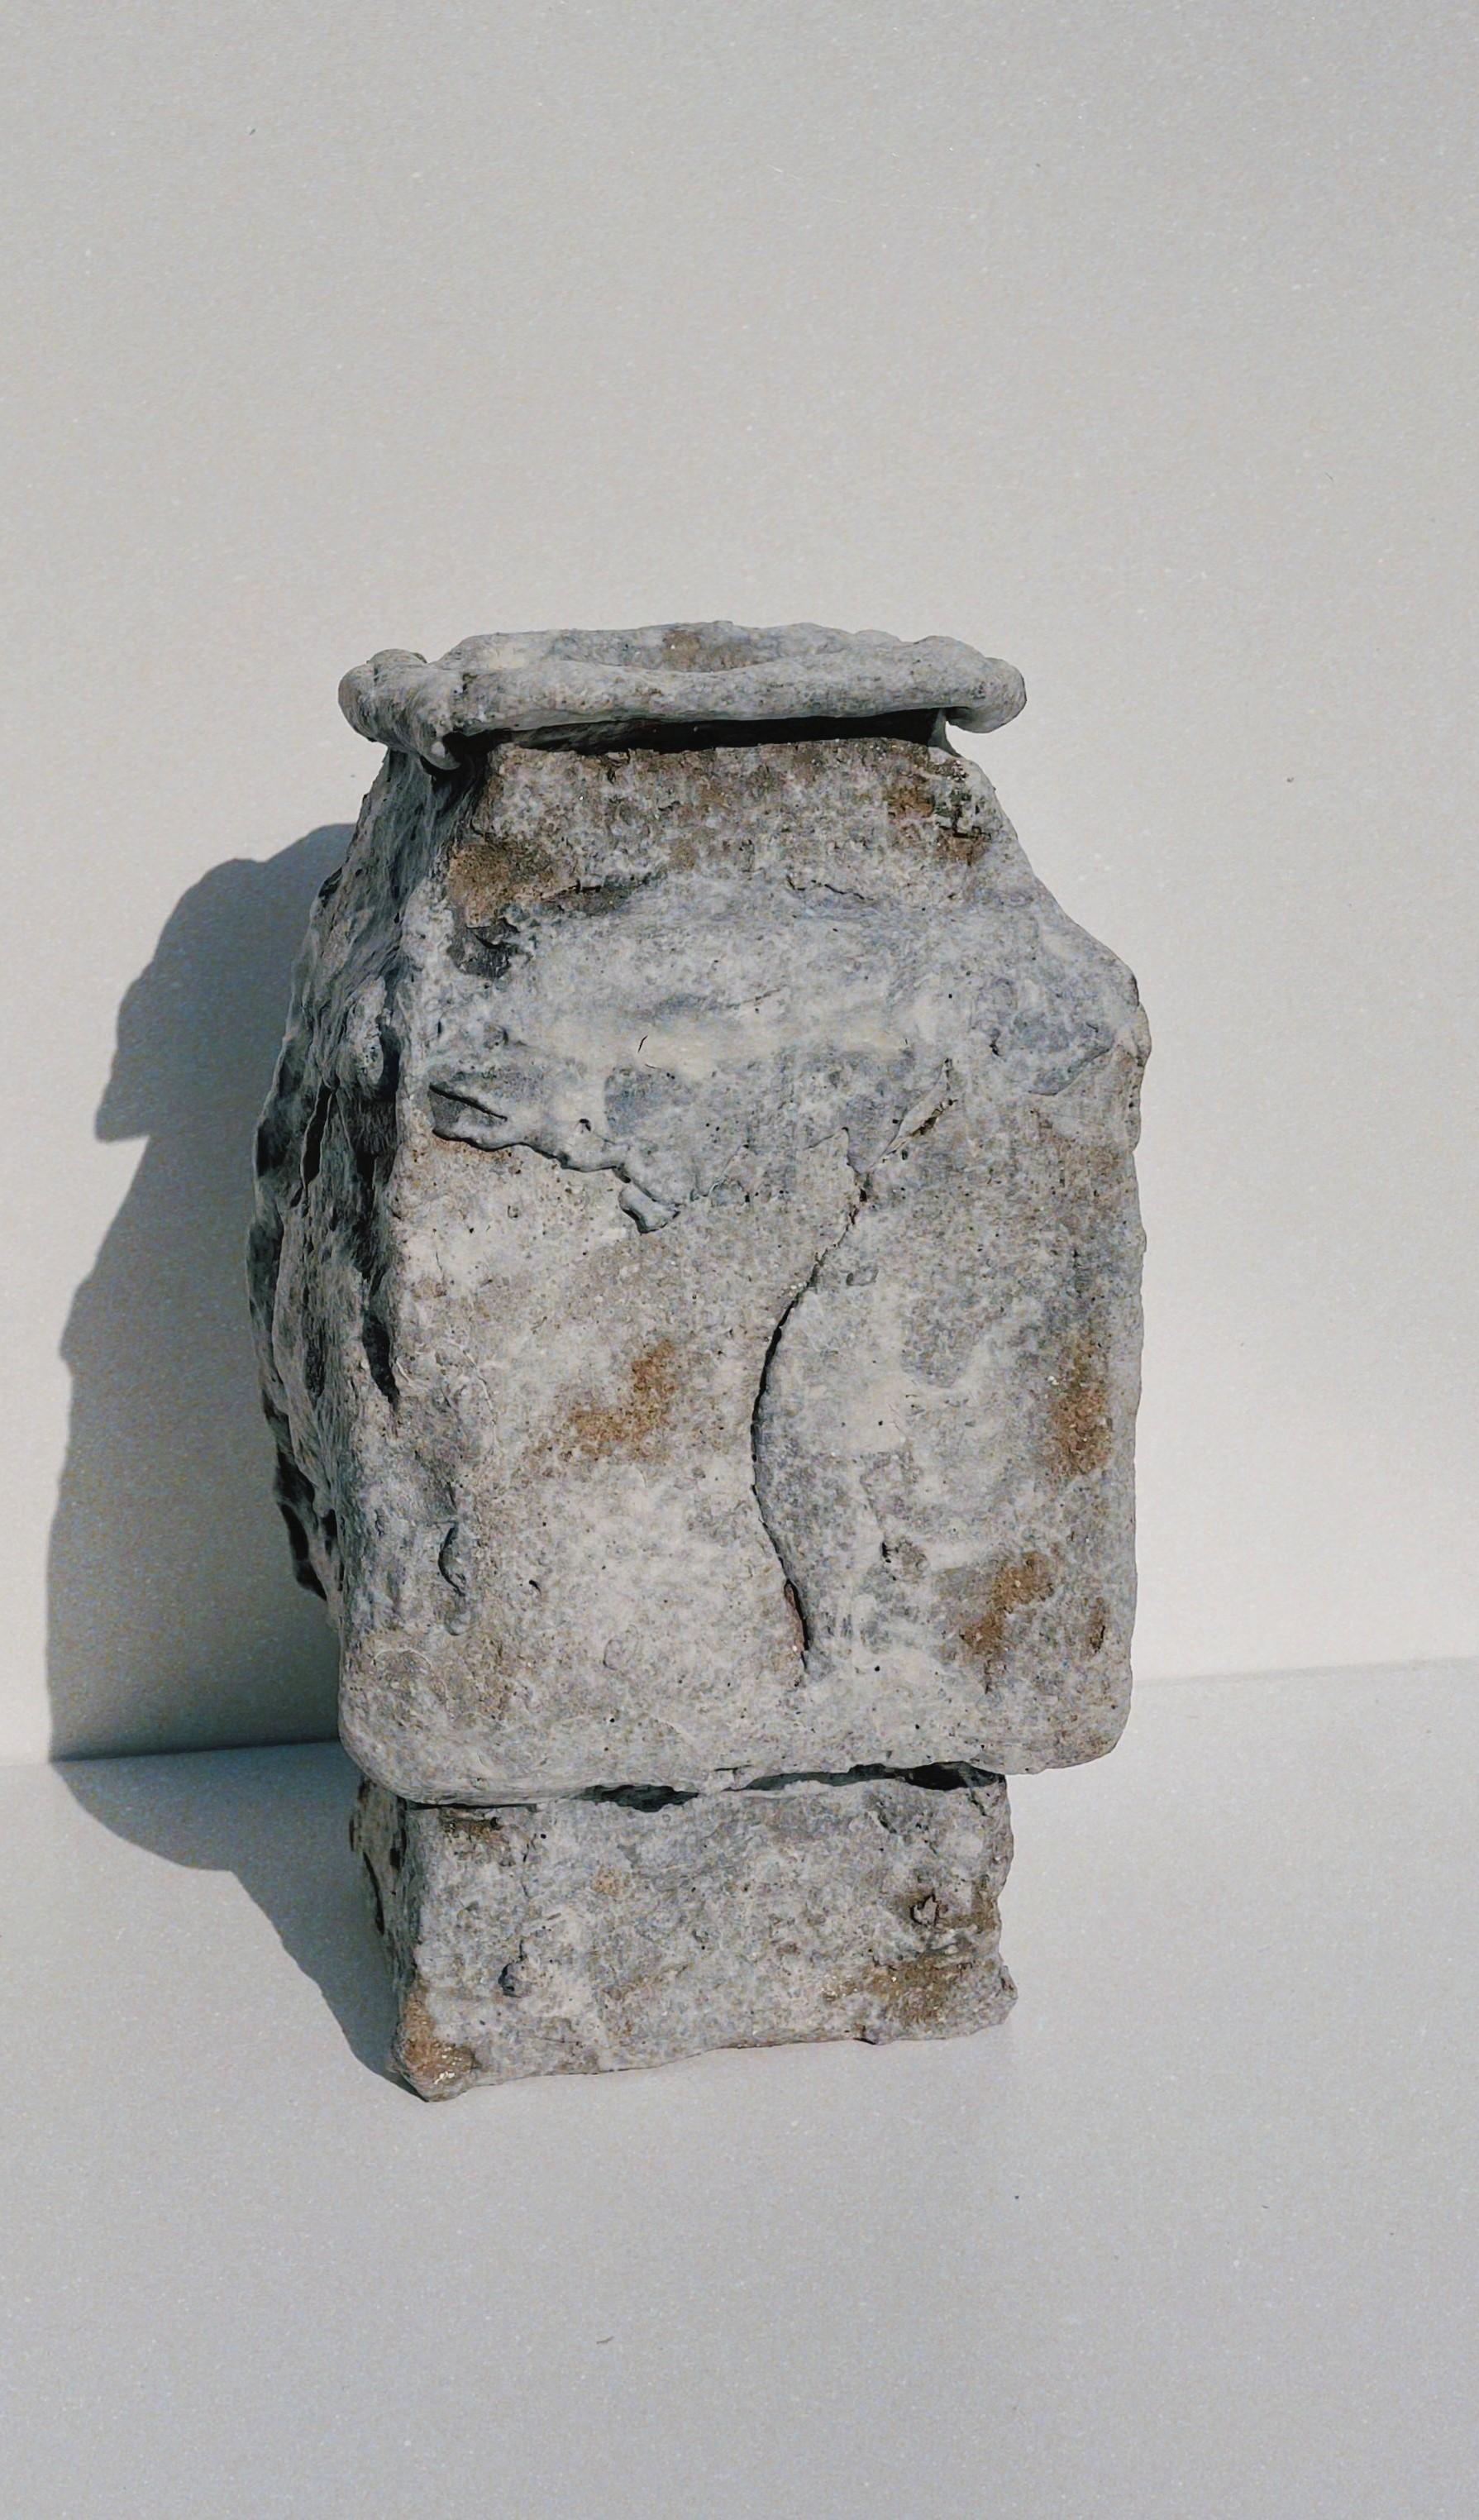 Unique II Steingut-Skulptur von Lisa Geue
Abmessungen: T 11 x B 12 x H 18,5 cm
MATERIALIEN: Steinzeug mit Schamotte, Porzellanschlicker, Kaolin, Mehrfachbrände
Nicht-funktional.

Lisa Geue arbeitet vor allem mit Keramik und schafft von antiken